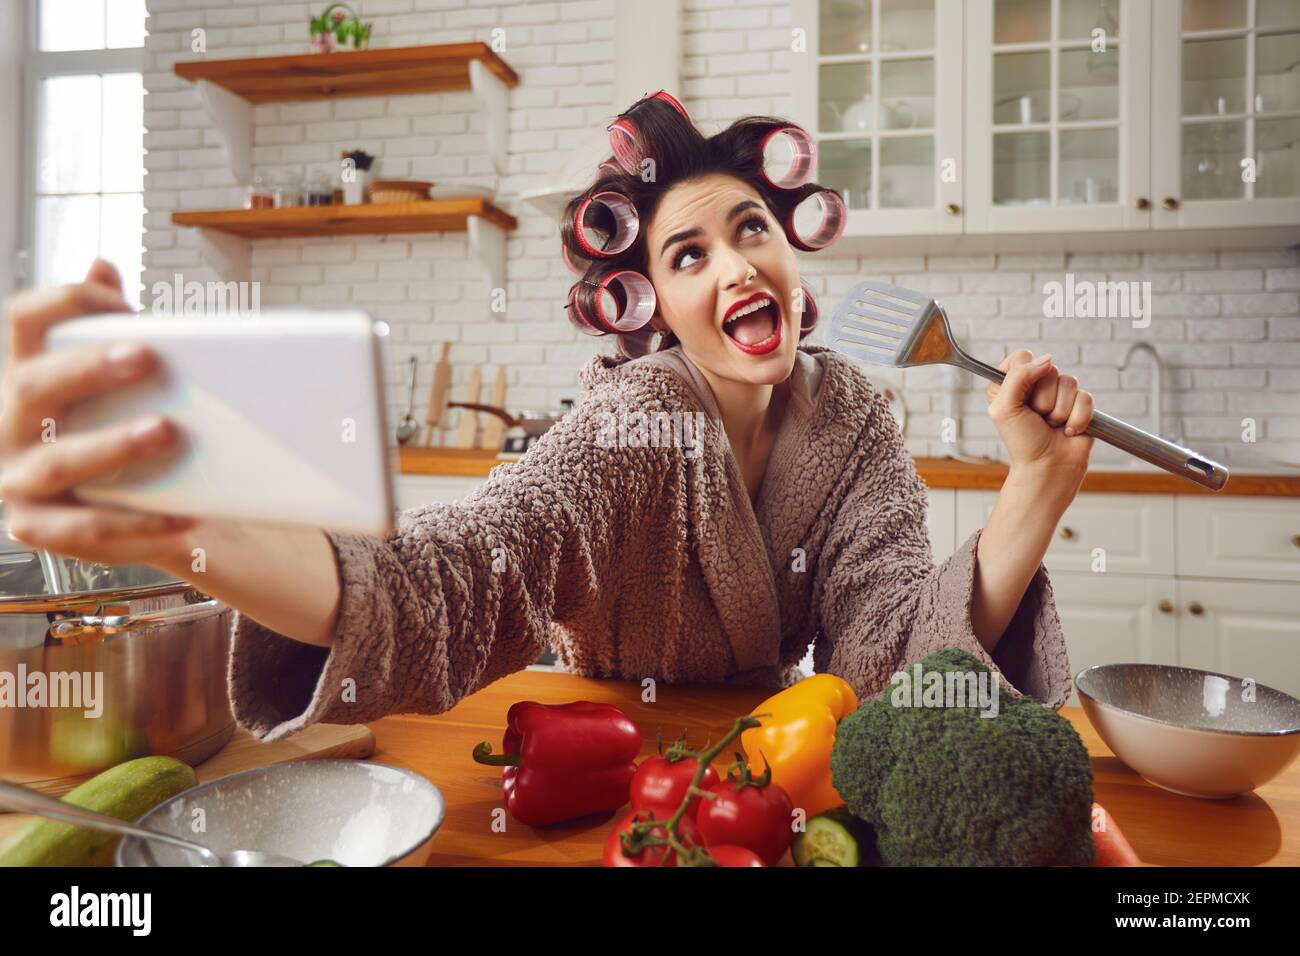 Frau im Haar Lockenwickler nehmen lustige Selfie auf Handy, während Kochen in der Küche Stockfoto